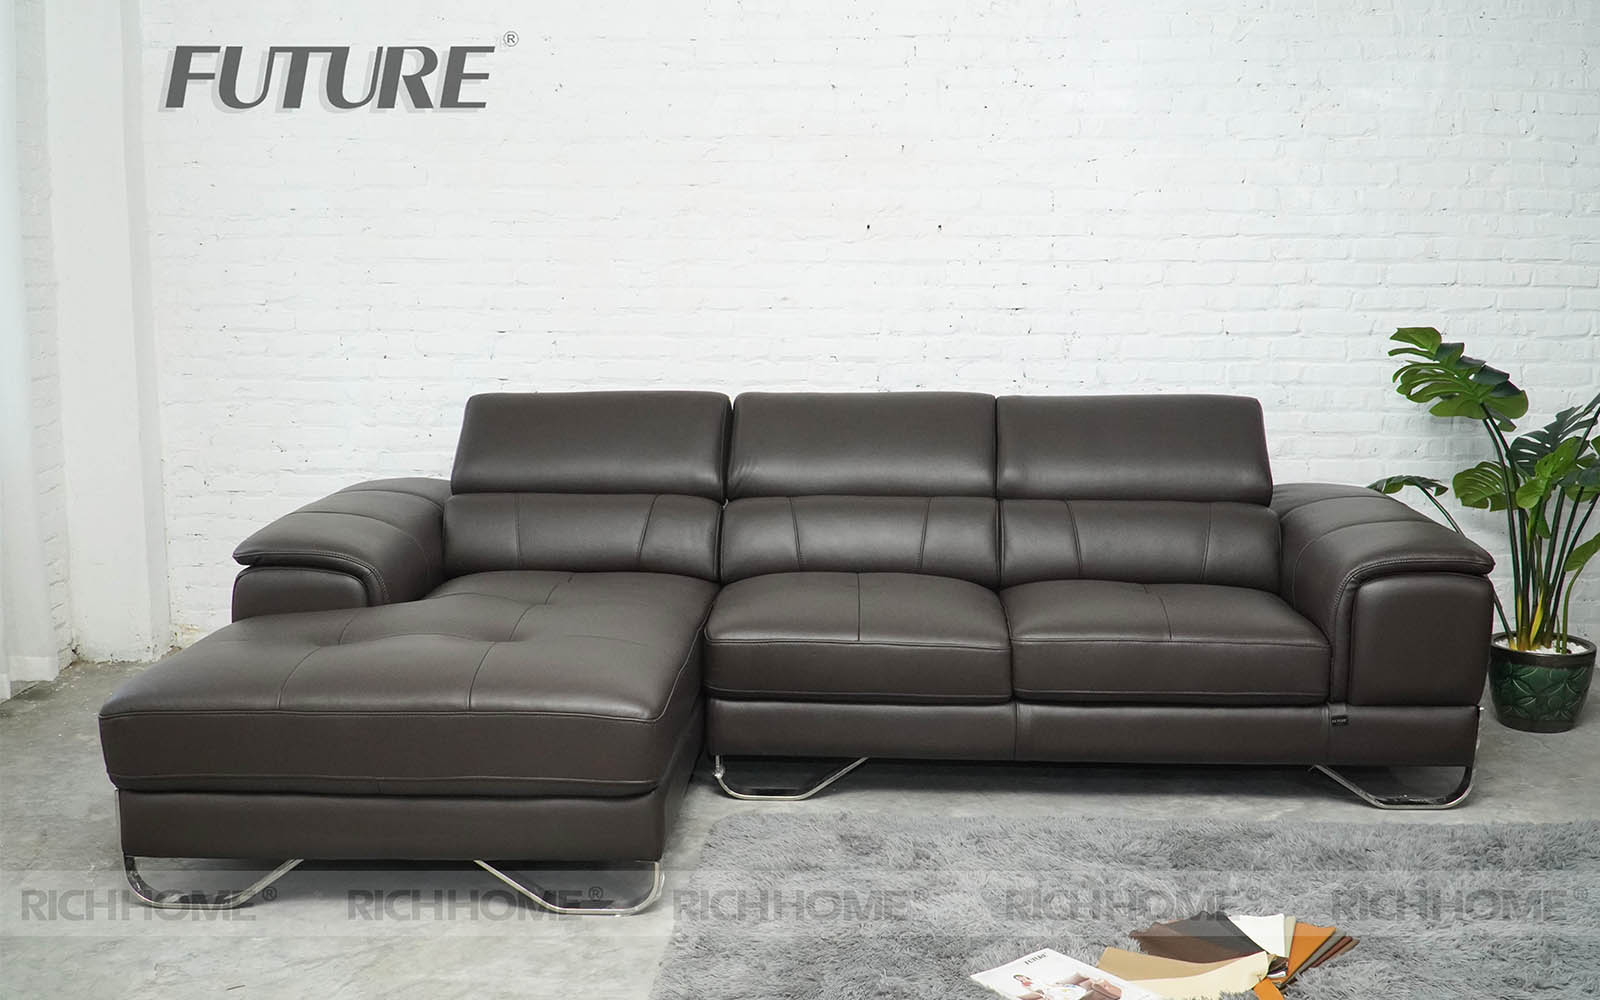 12 mẫu sofa da bò góc chữ L mẫu siêu mới siêu Hot - Ảnh 13